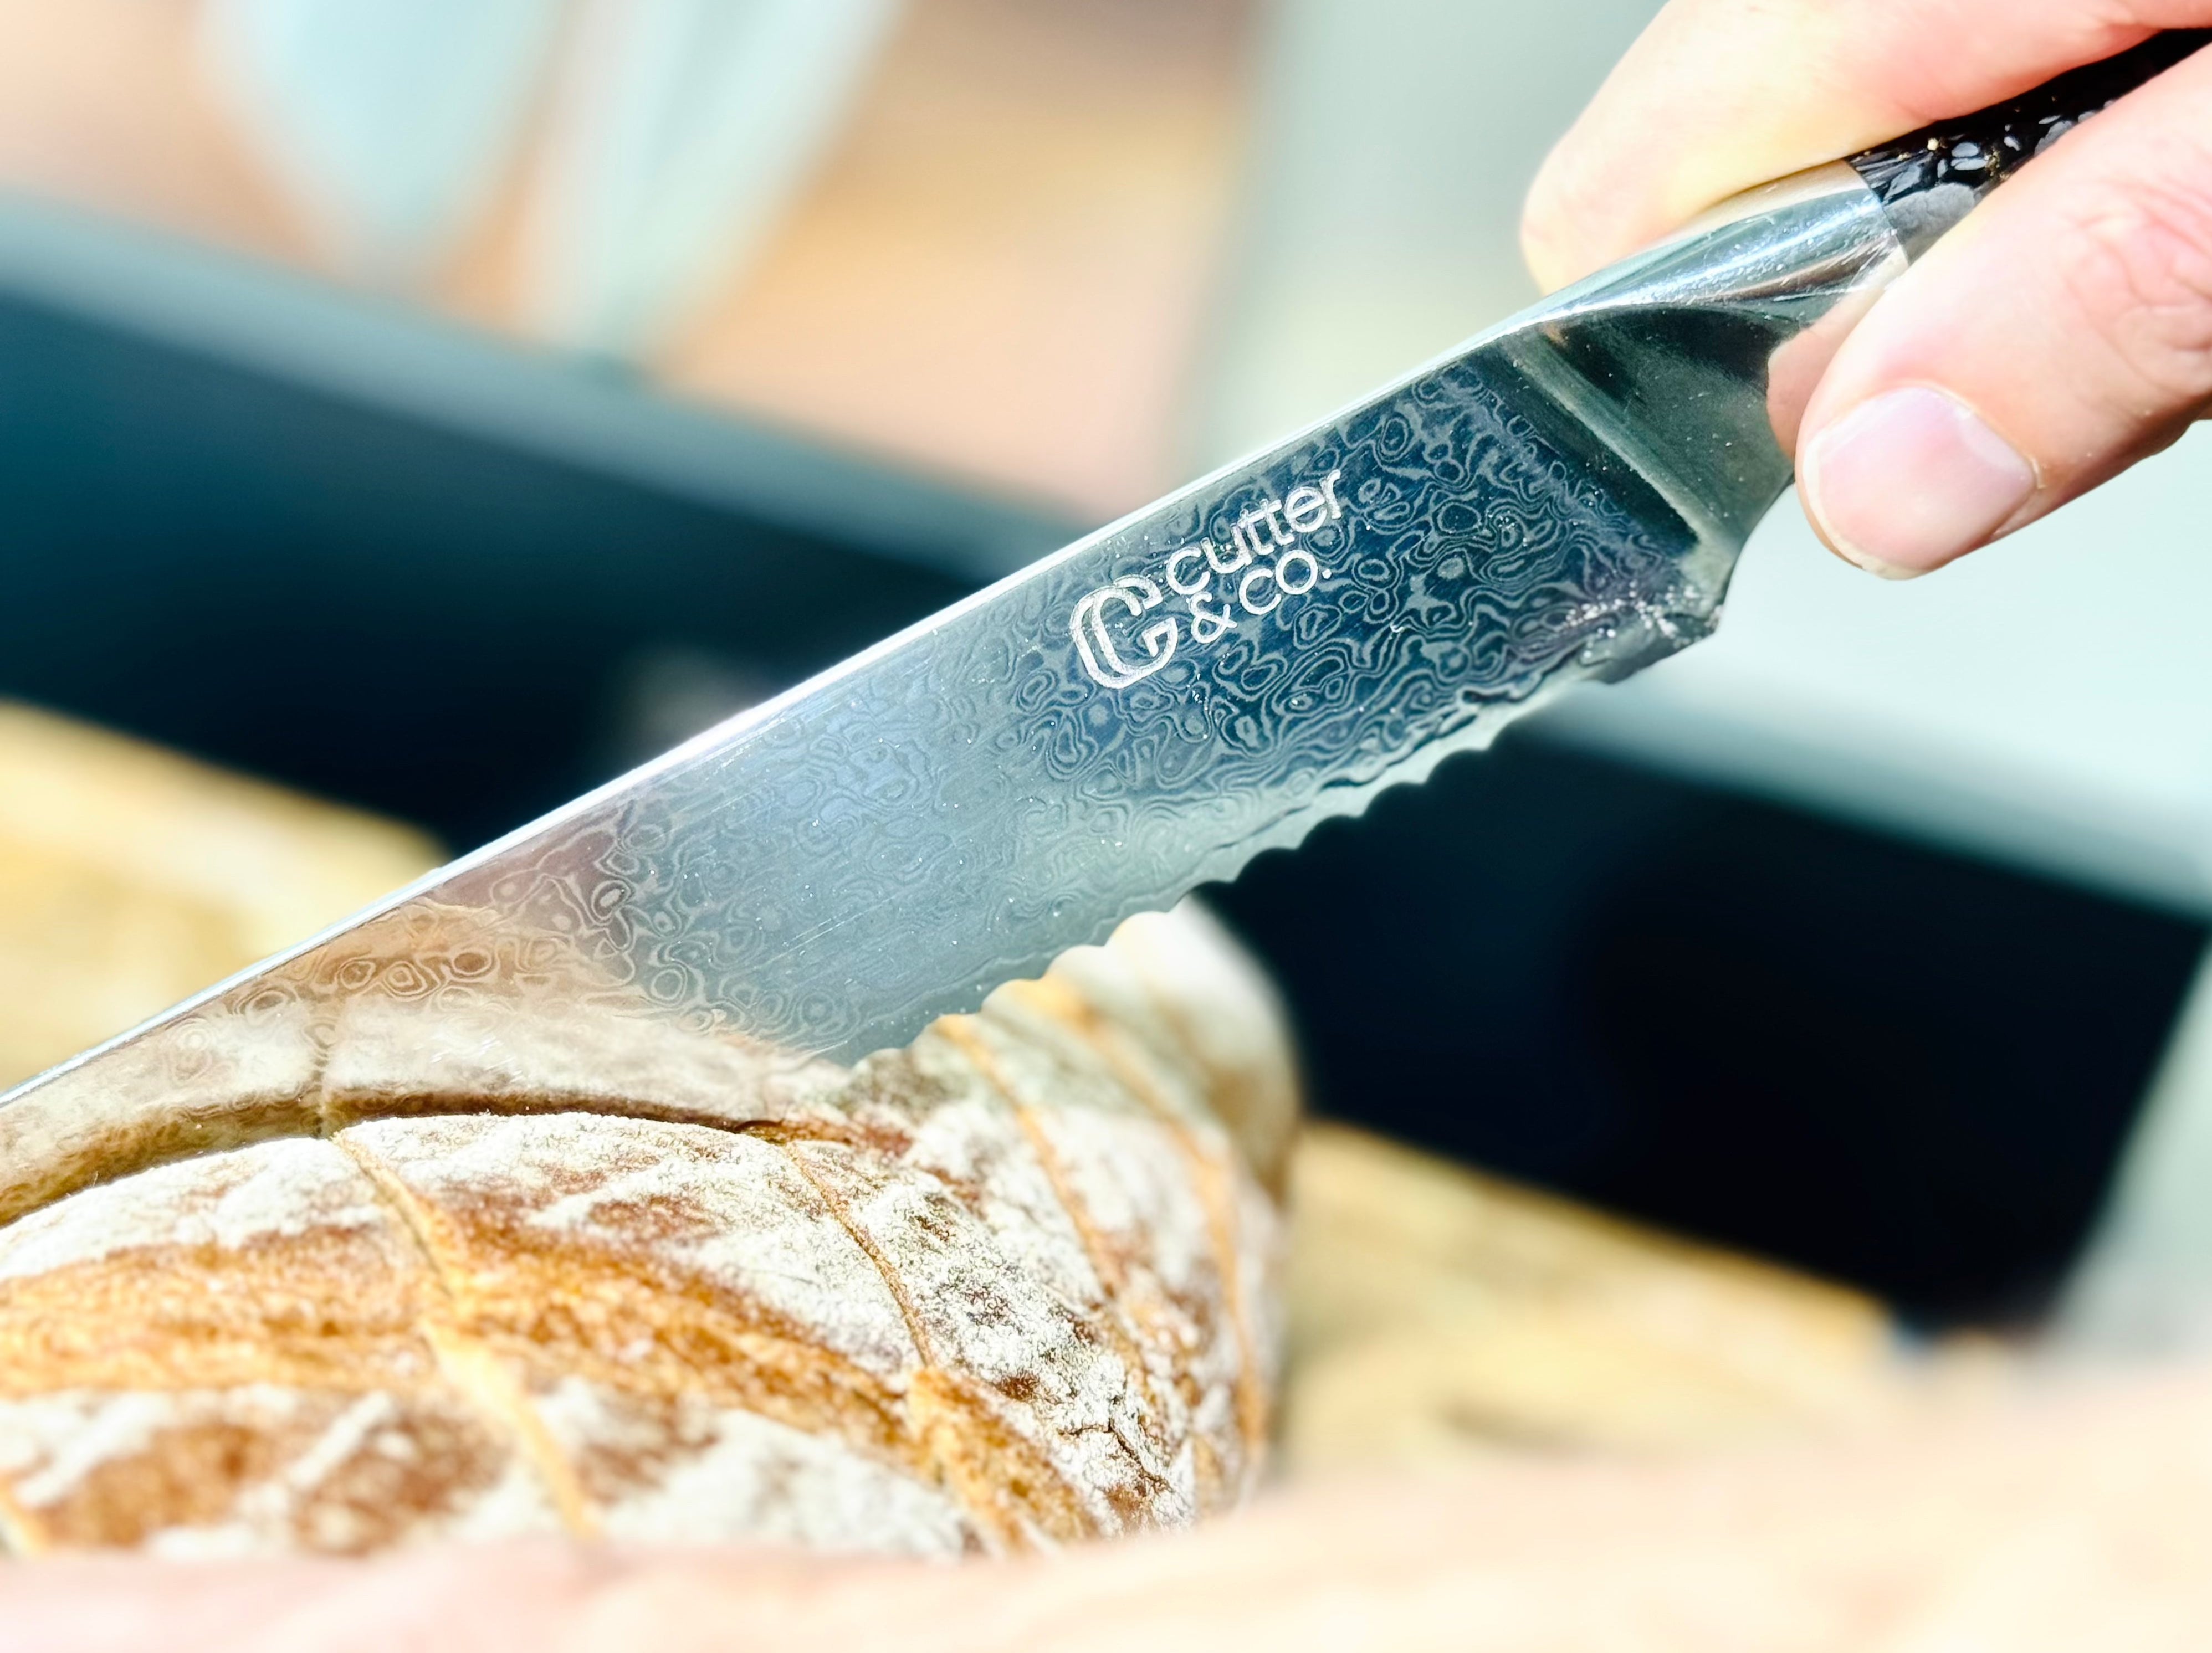 MOSFiATA Bread Knife 8 Inch Serrated Knife, 5Cr15Mov High Carbon